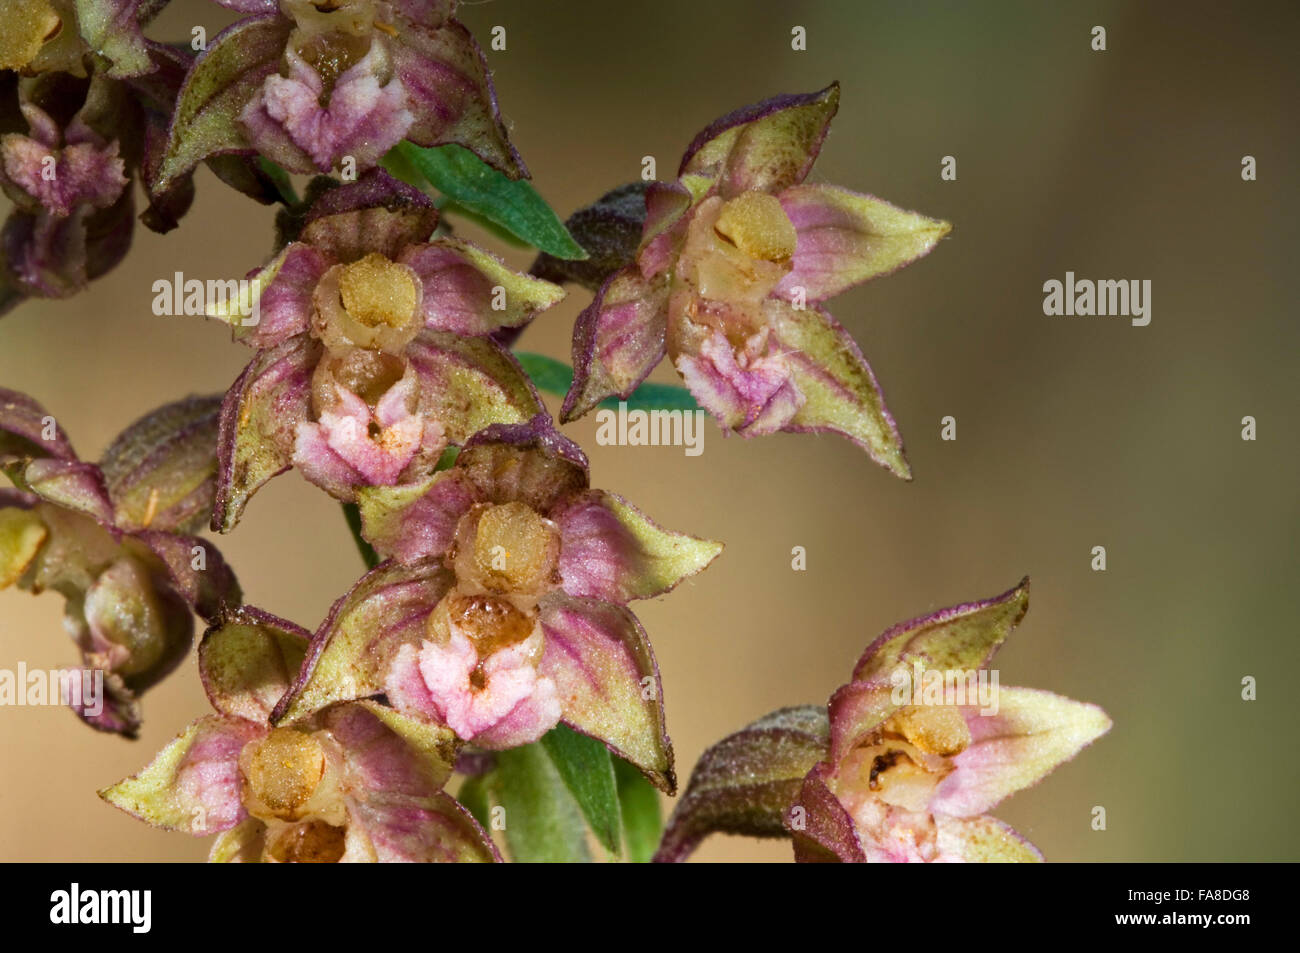 Broad-leaved helleborine (Epipactis helleborine / Serapias helleborine L.) in flower Stock Photo